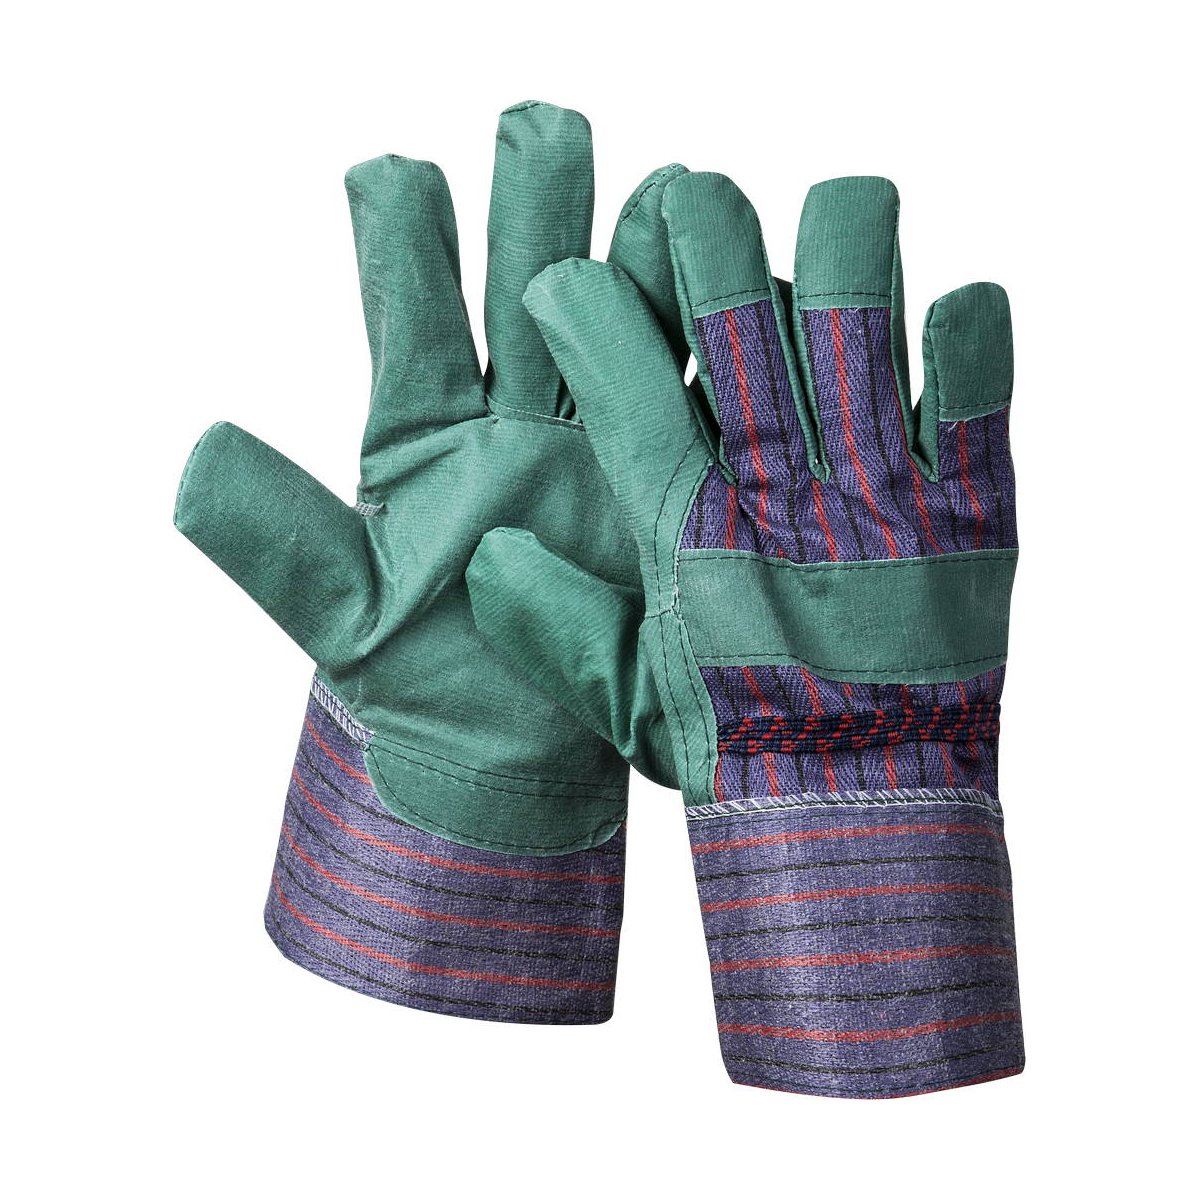 Рабочие перчатки STAYER р. XL искусственная кожа зеленые (1132-XL)Купить